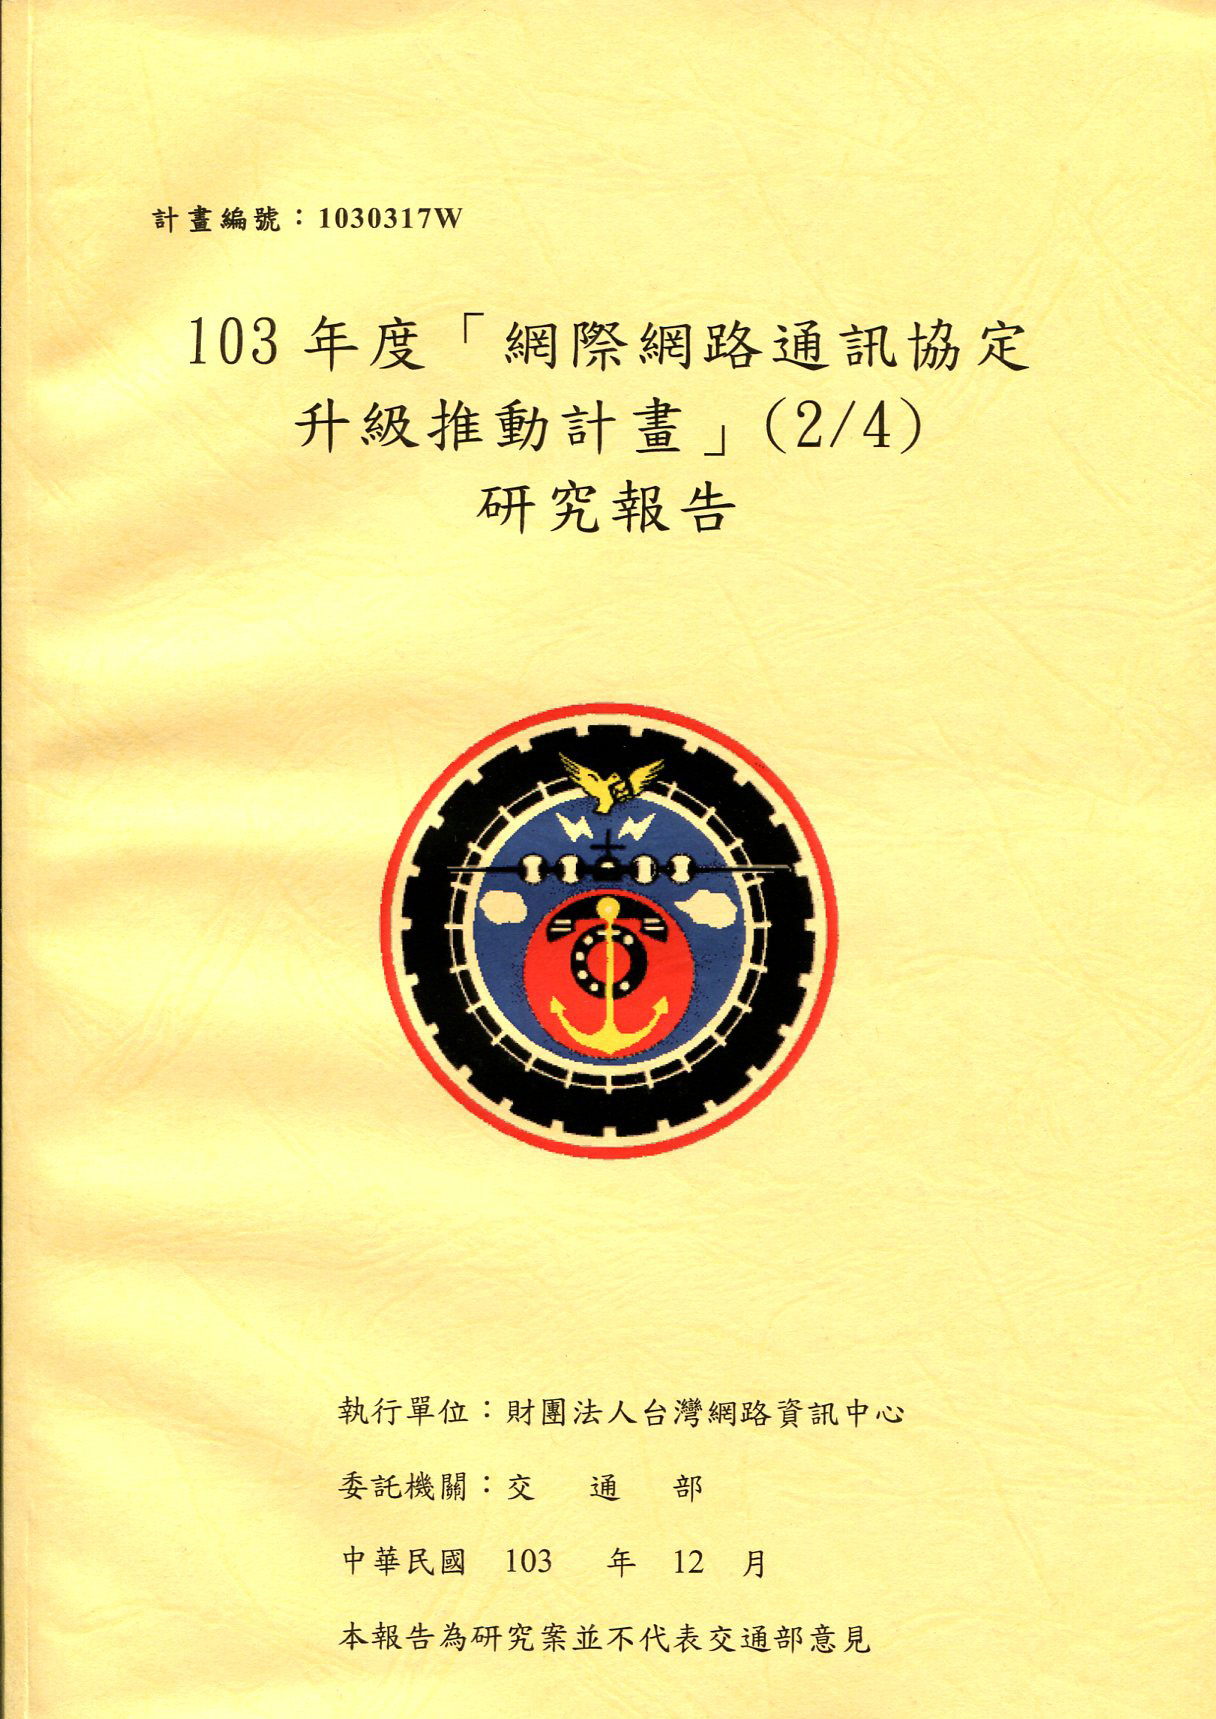 103年度「網際網路通訊協定升級推動計畫」(2/4)研究報告